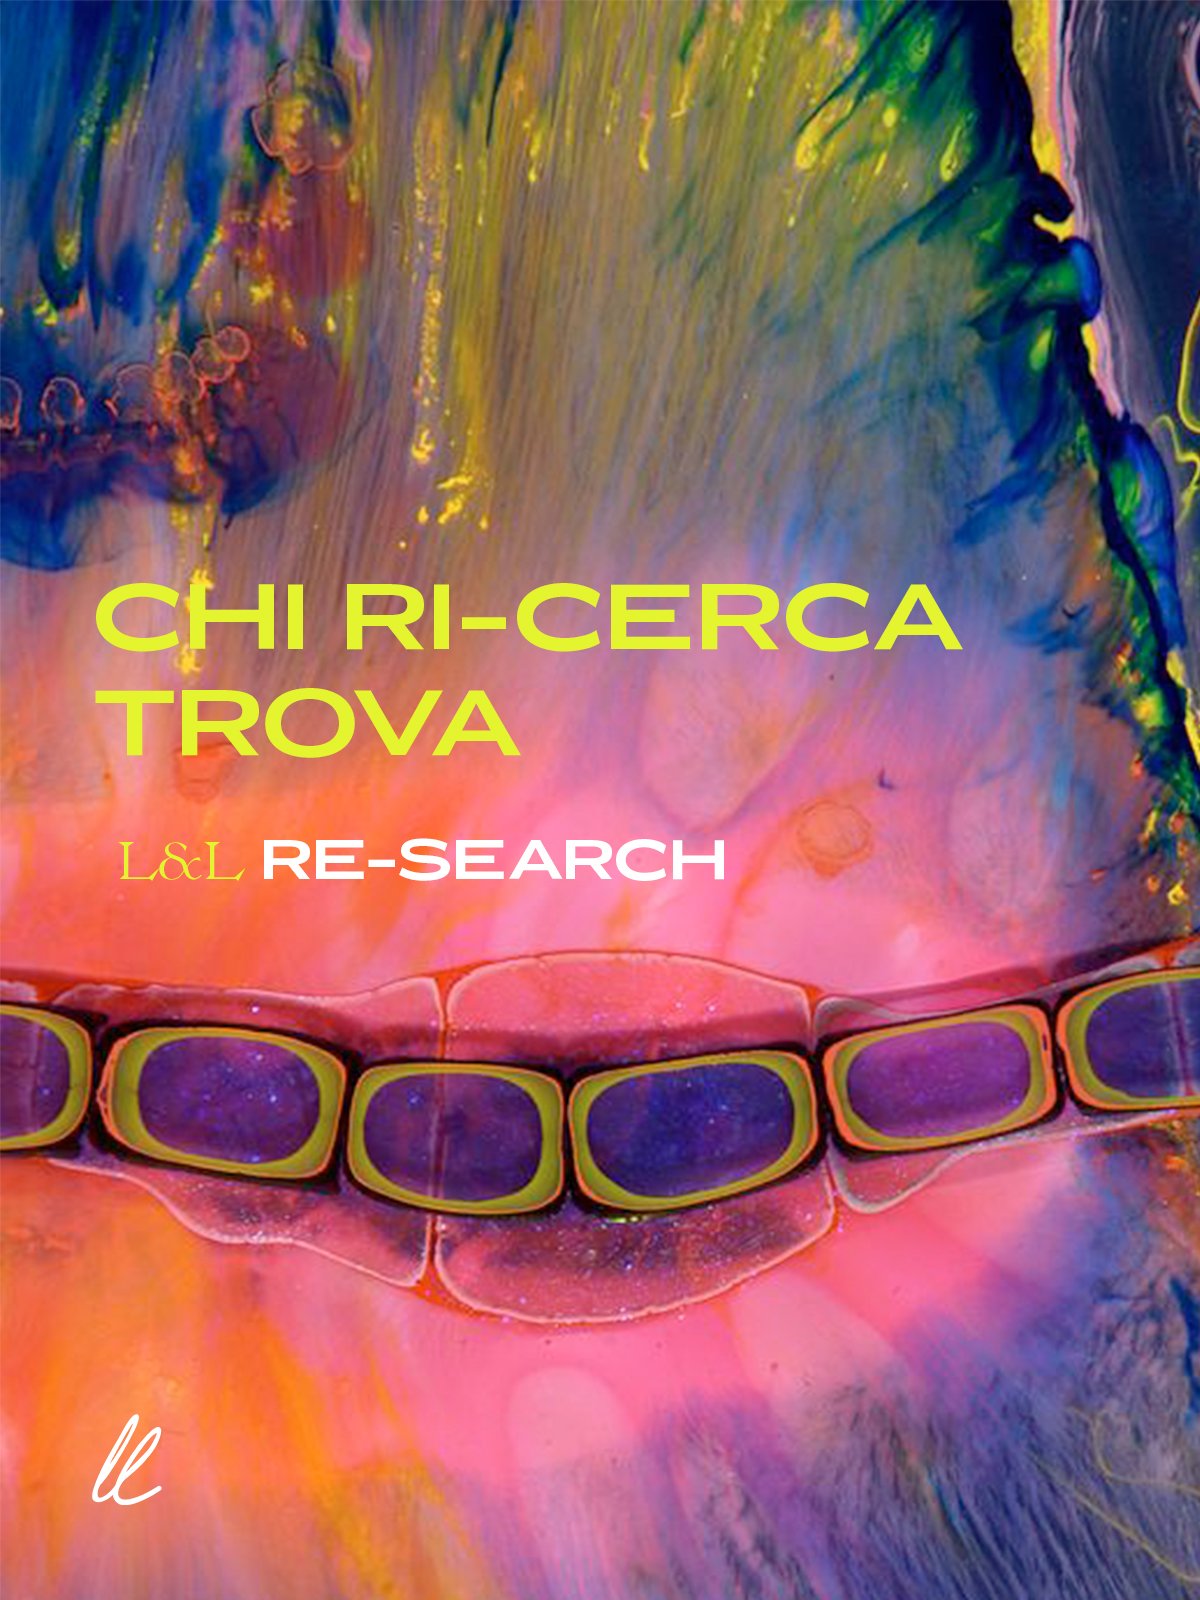 Chi Ri-Cerca Trova: From the cactus comes Desserto, the vegan, performance material